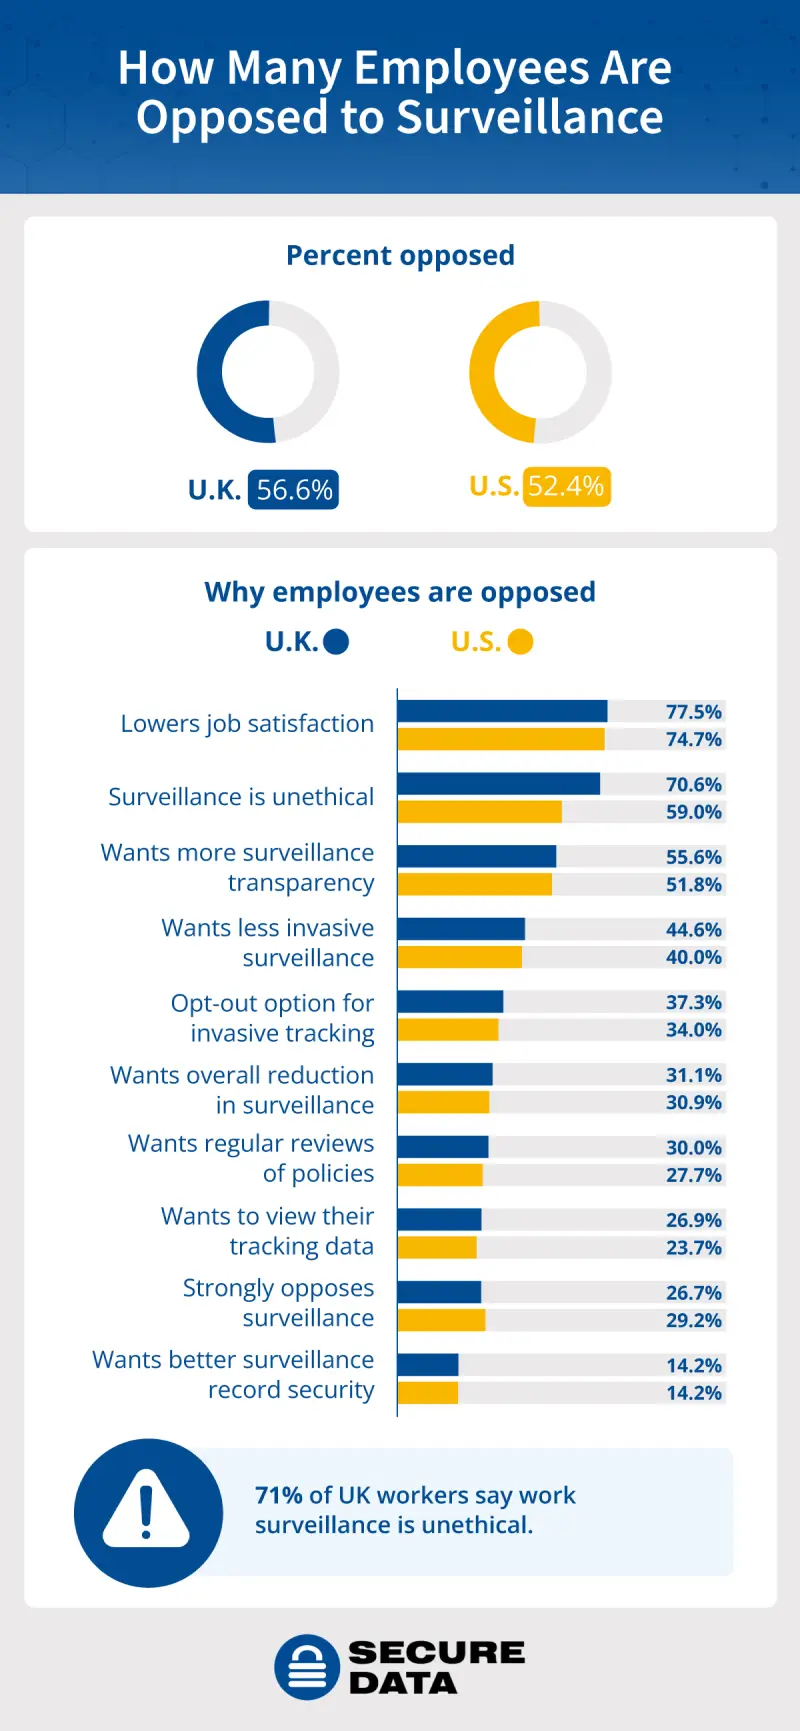 Dashboard showing U.S. and U.K. opposition to work surveillance